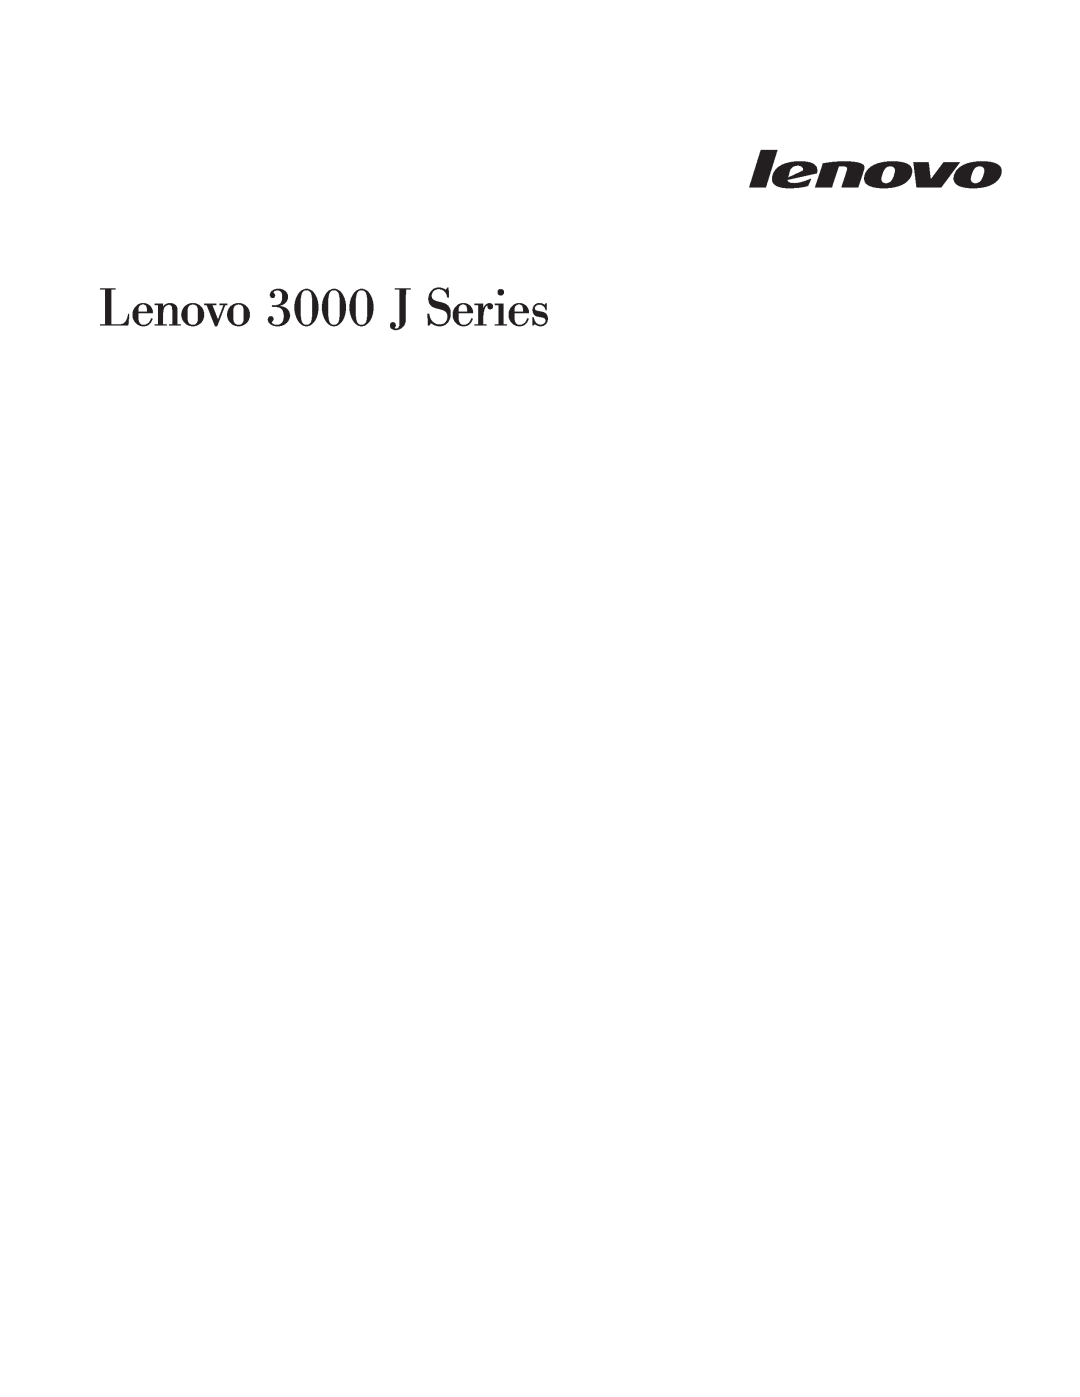 Lenovo 8459, 8455, 8453, 8454, 8460, 8457, 8458, 8456 manual Lenovo 3000 J Series 